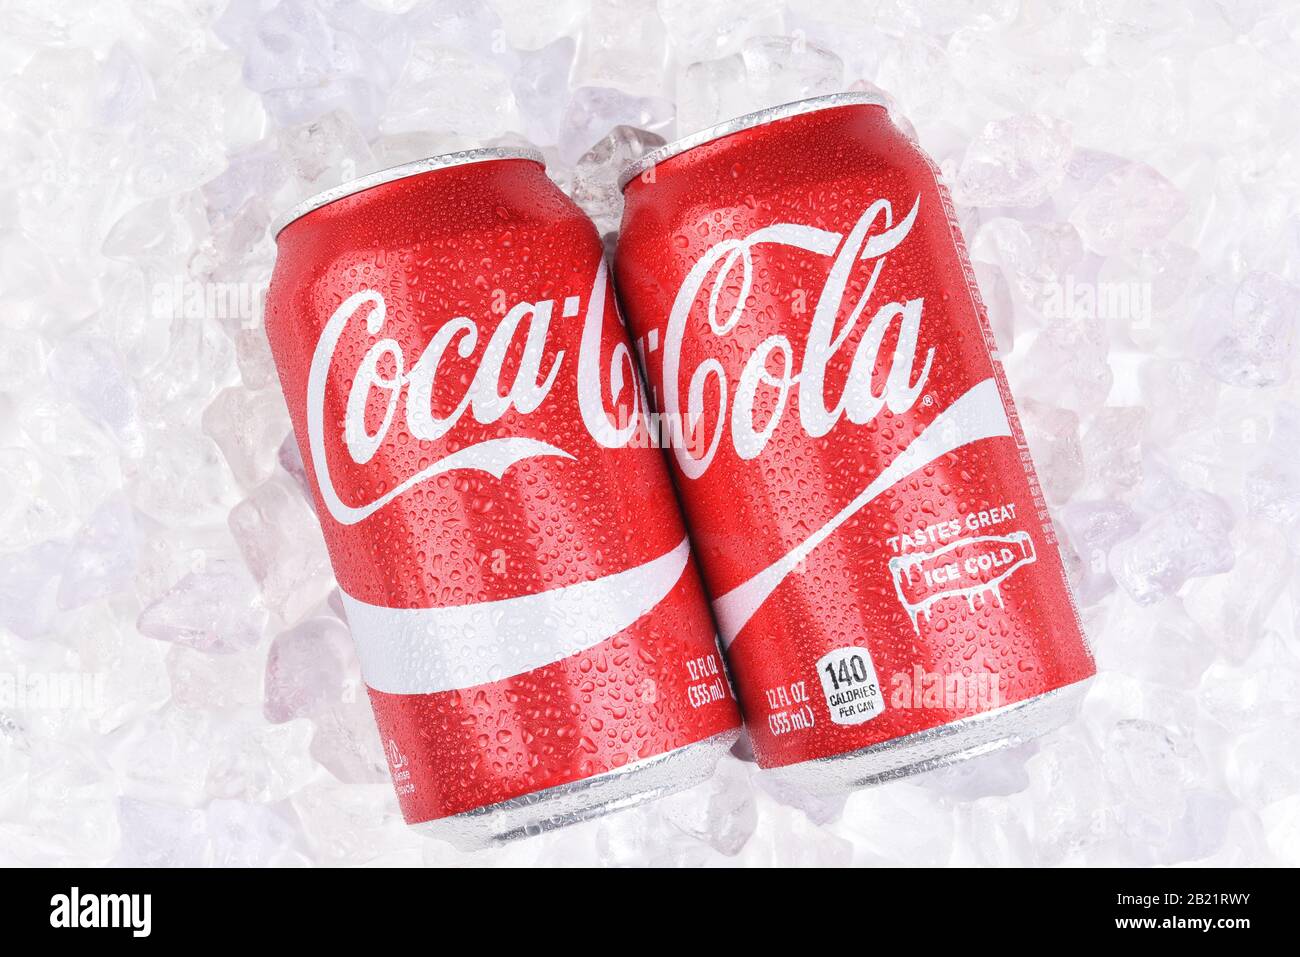 Irvine, CALIFORNIA - 10 LUGLIO 2017: Due Lattine Coca-Cola su un letto di ghiaccio con condensa. Il coke è la bevanda analcolica gassata più popolare al mondo. Foto Stock